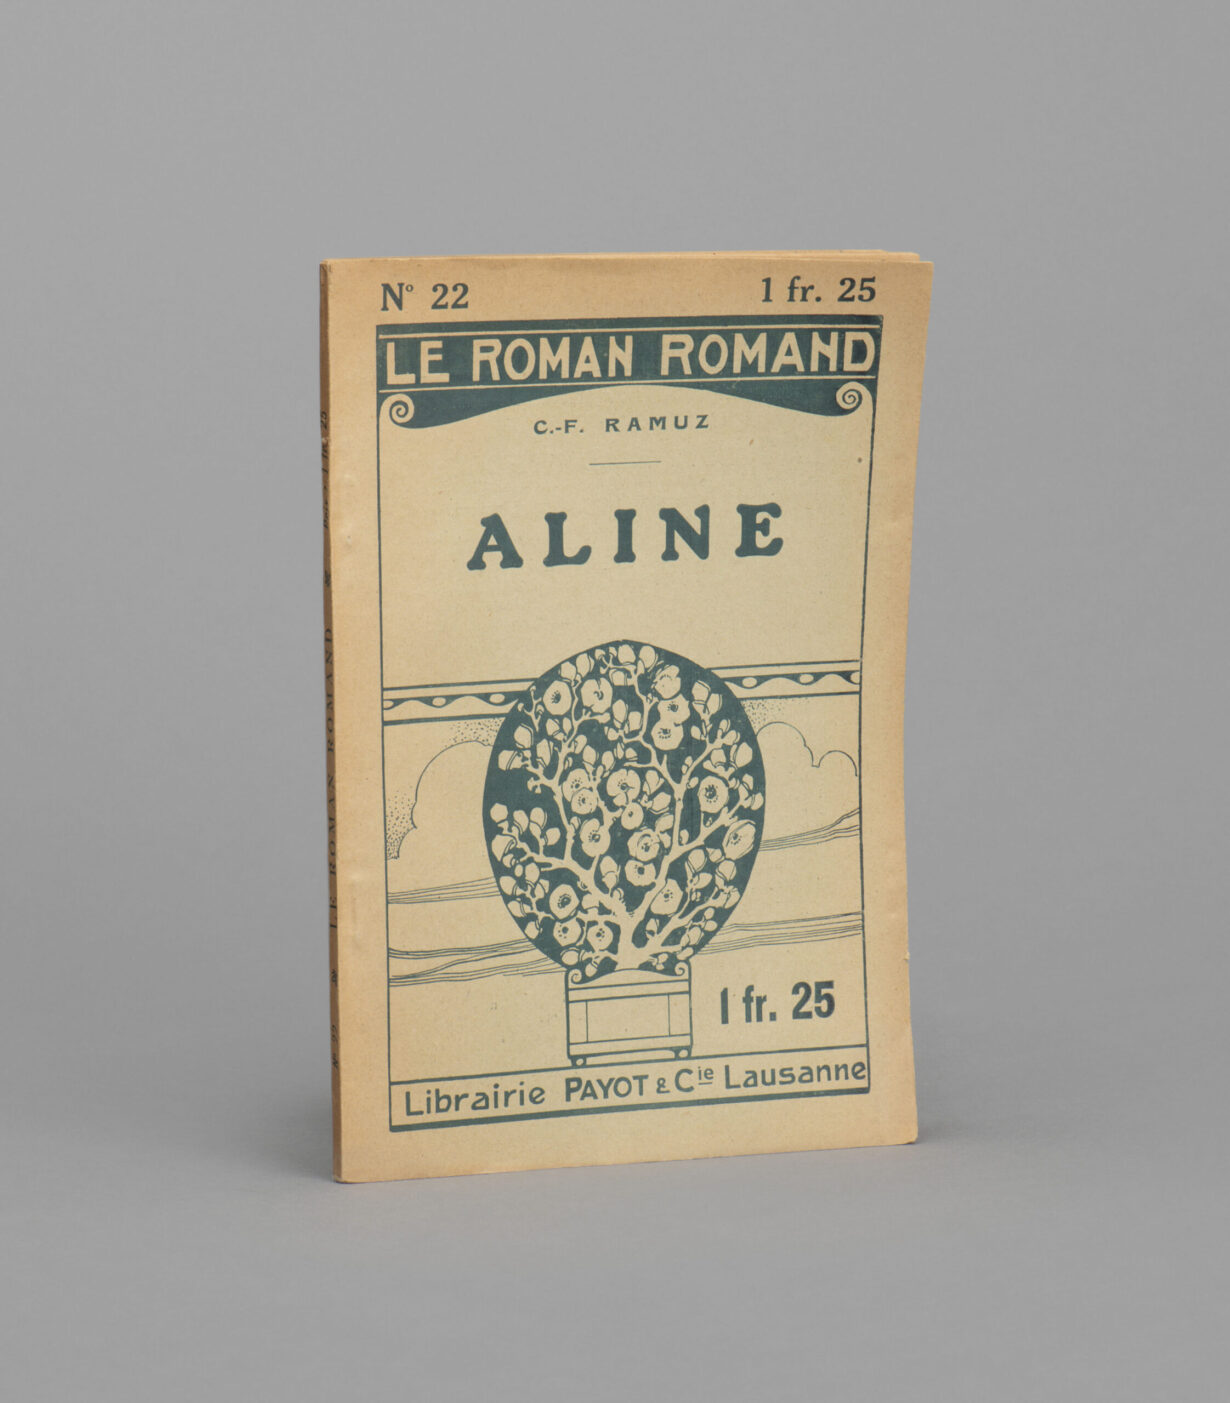 Couverture du roman « Aline ». Des motifs végétaux de couleur sauge ornent un papier jauni.